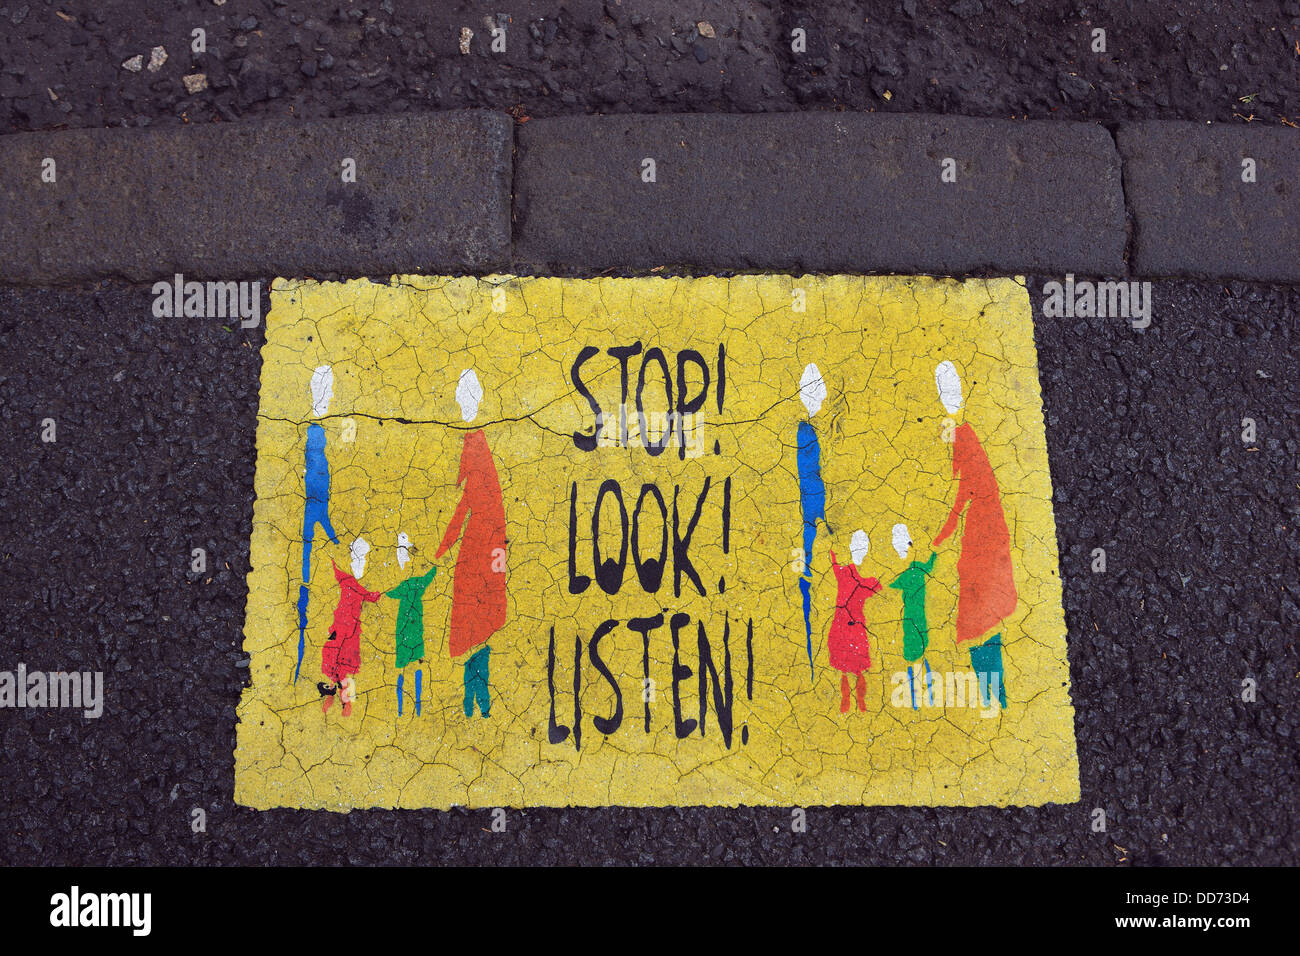 Smettere di guardare e ascoltare il segno, rivolto a bambini, sul marciapiede nel villaggio scozzese di Aberdour in Fife Scozia Scotland Foto Stock